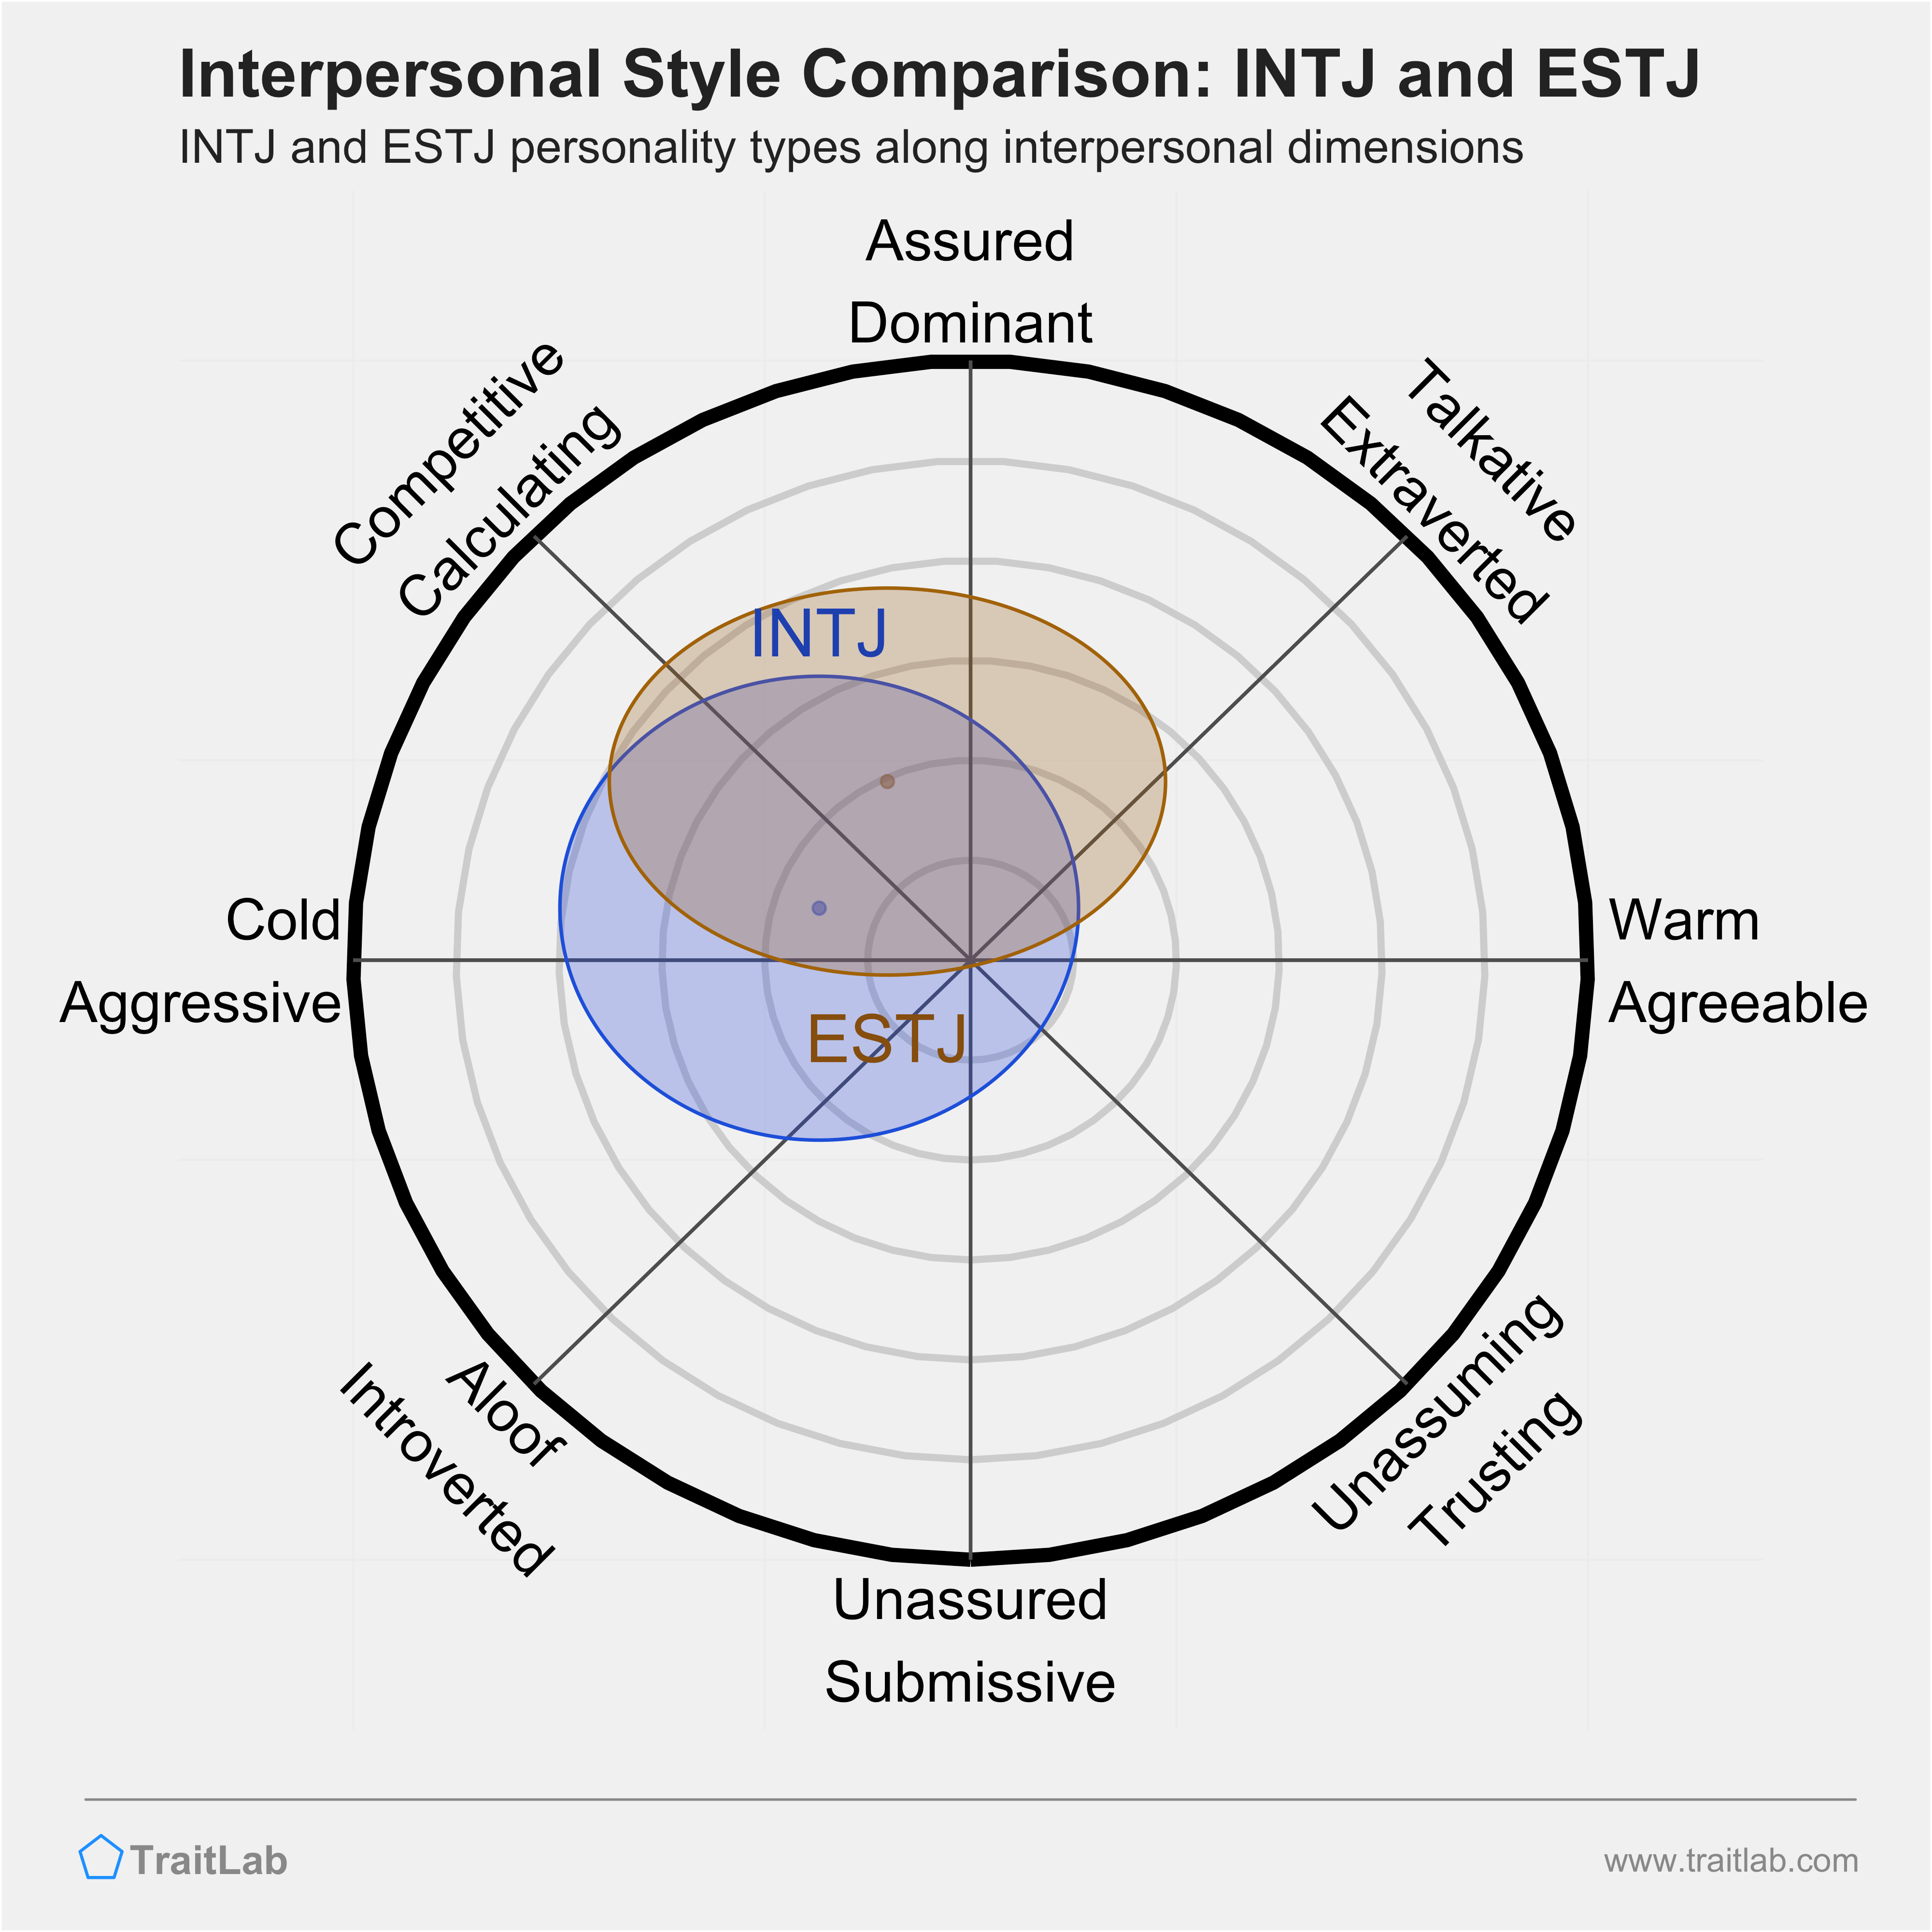 INTJ and ESTJ comparison across interpersonal dimensions